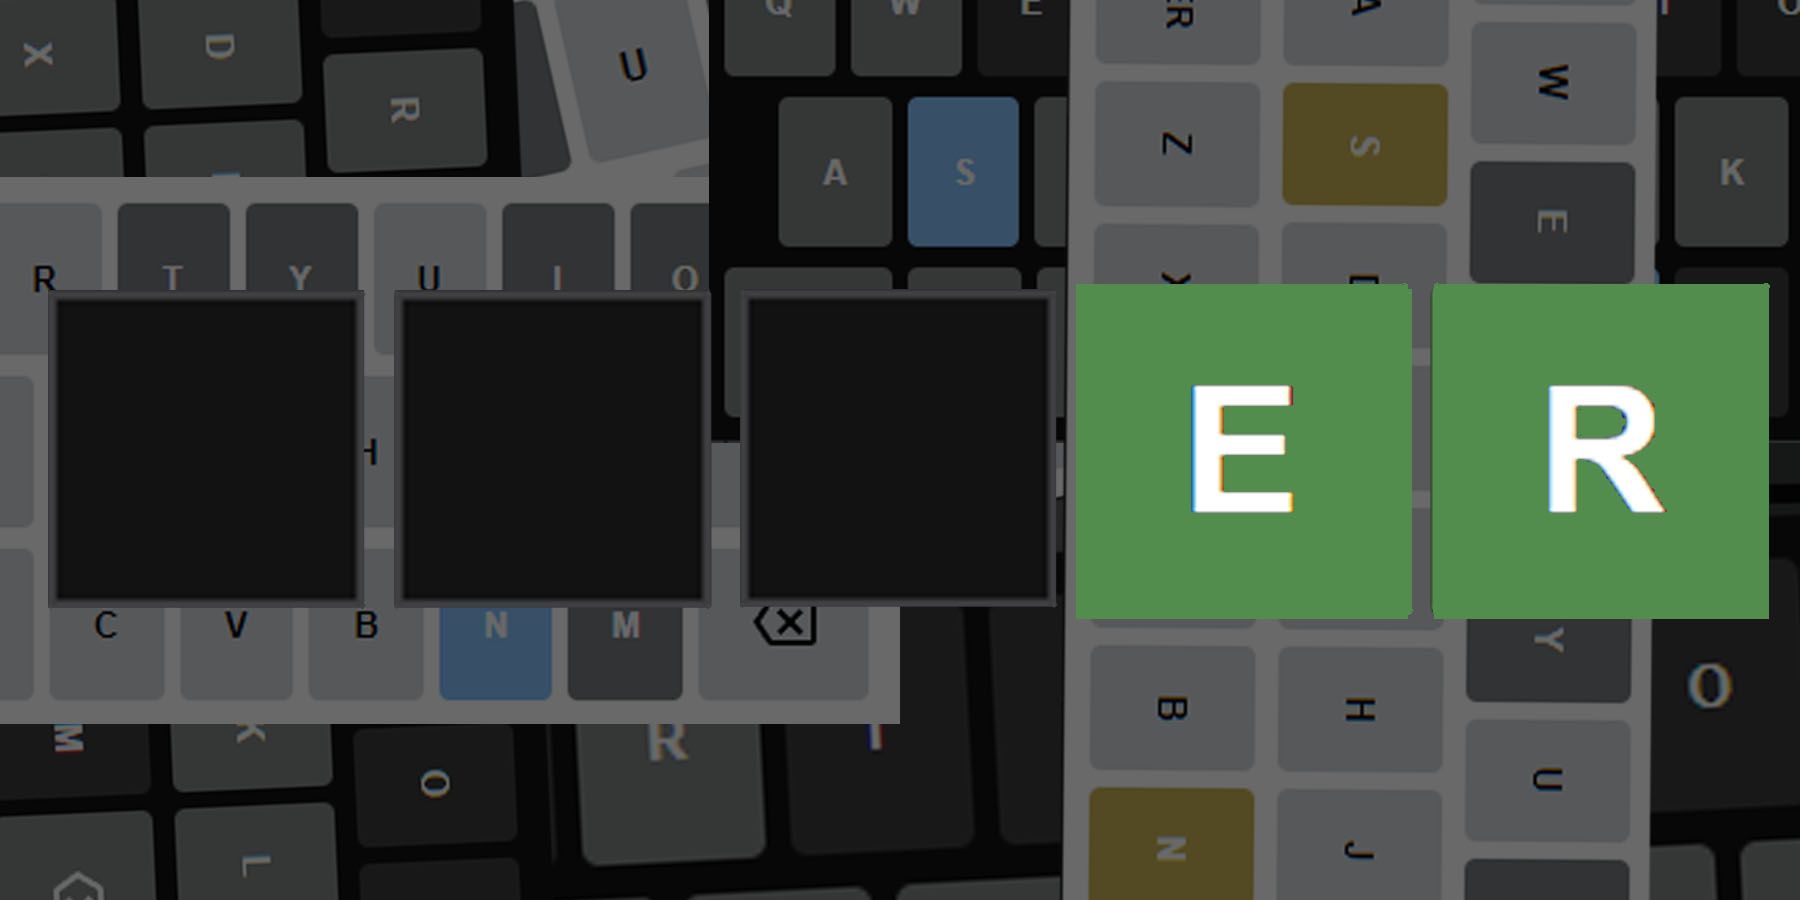 Wordle 335 Guide: 5-bokstavs ord som slutter på ER